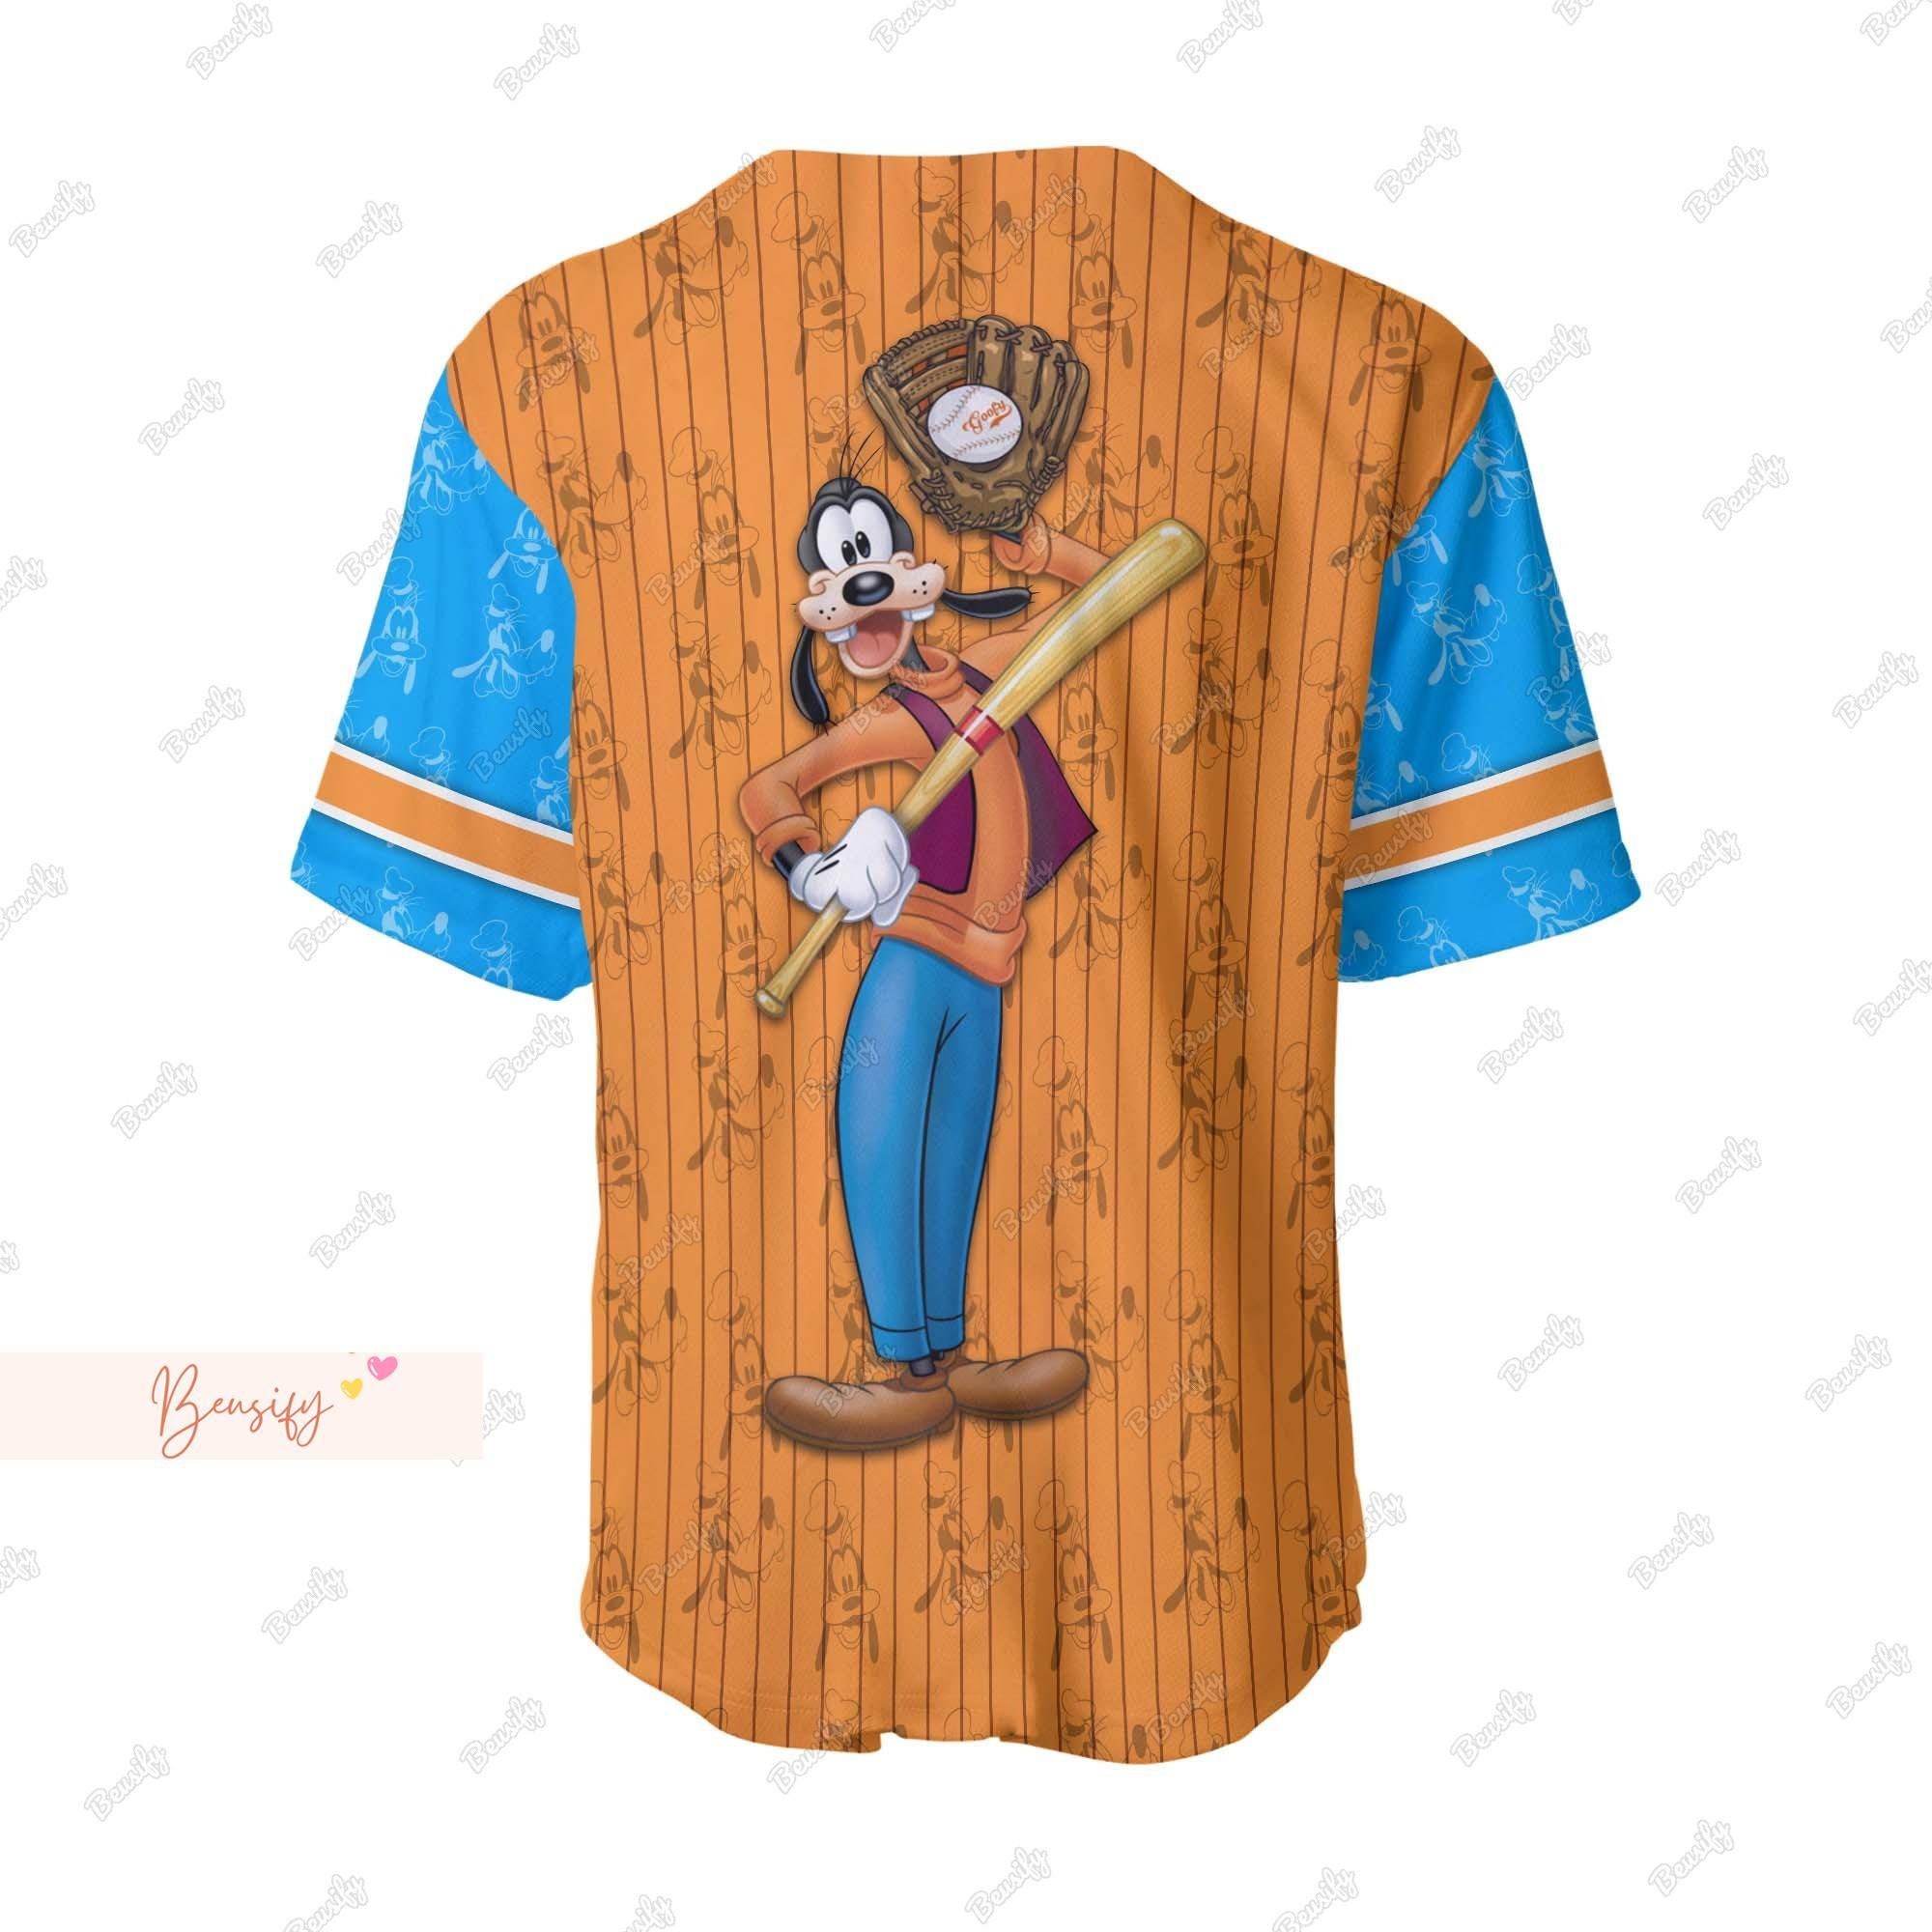 Goofy Jersey Shirt, Personalized Baseball Jersey